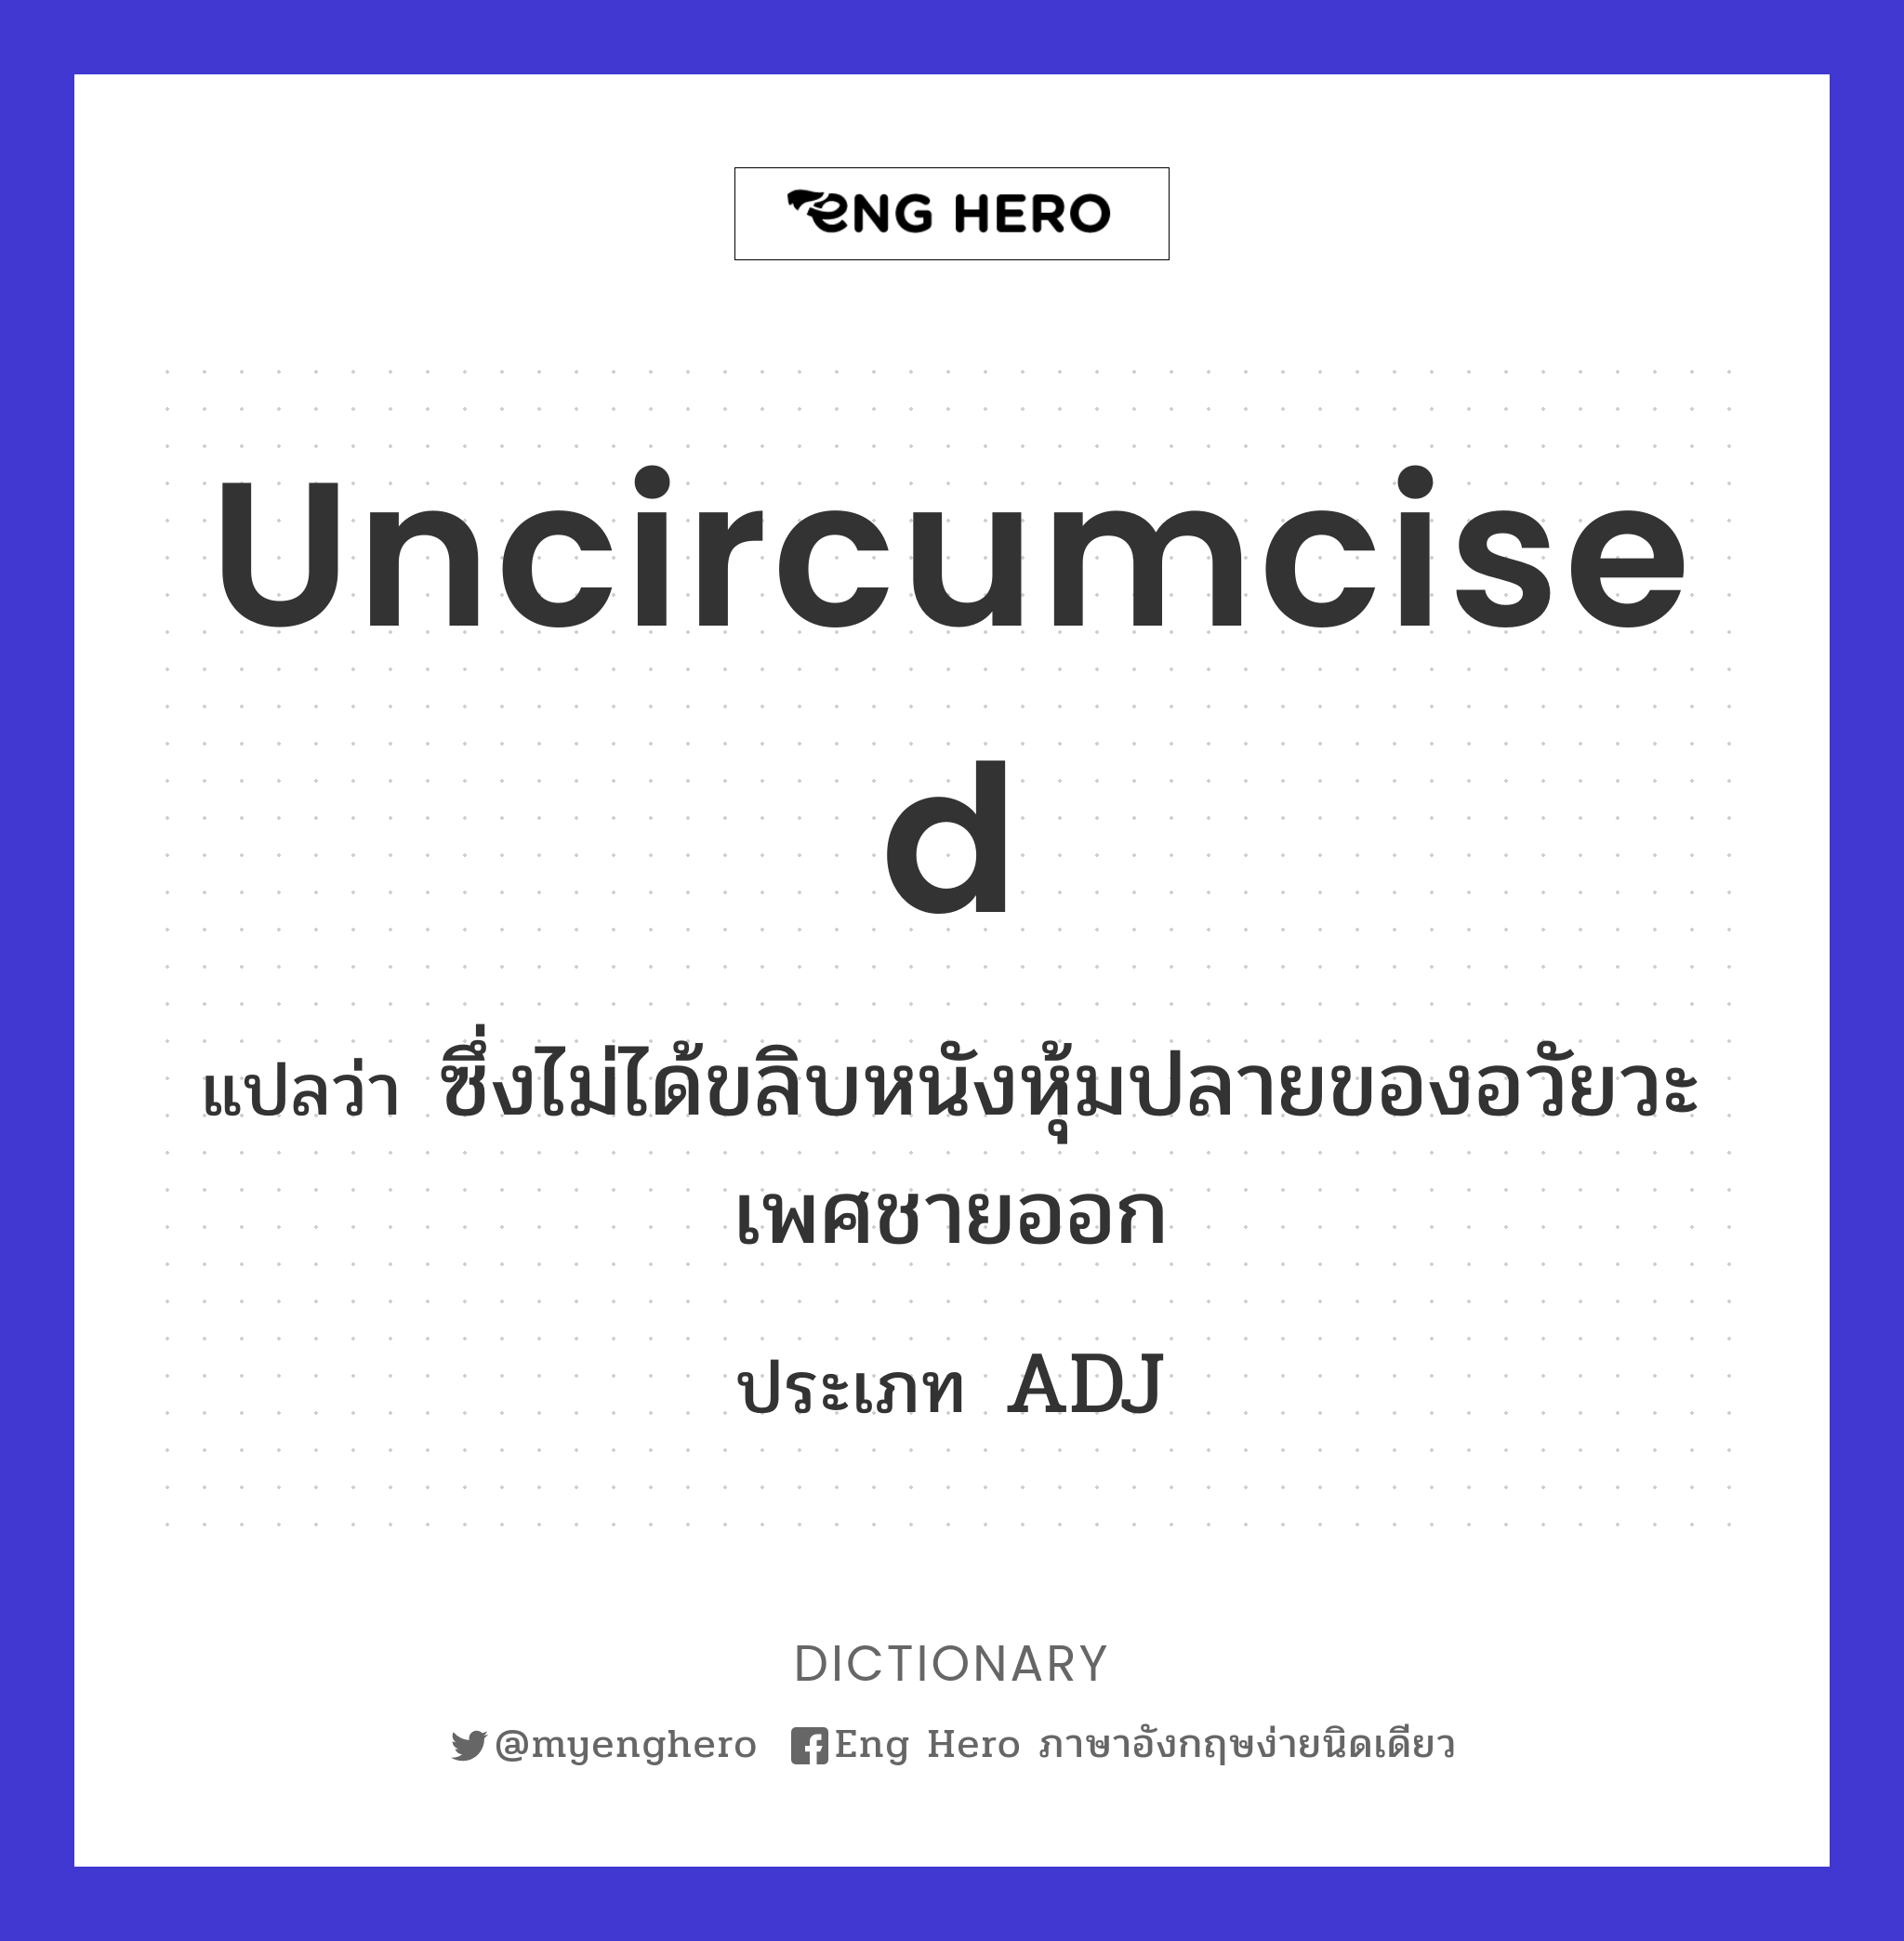 uncircumcised